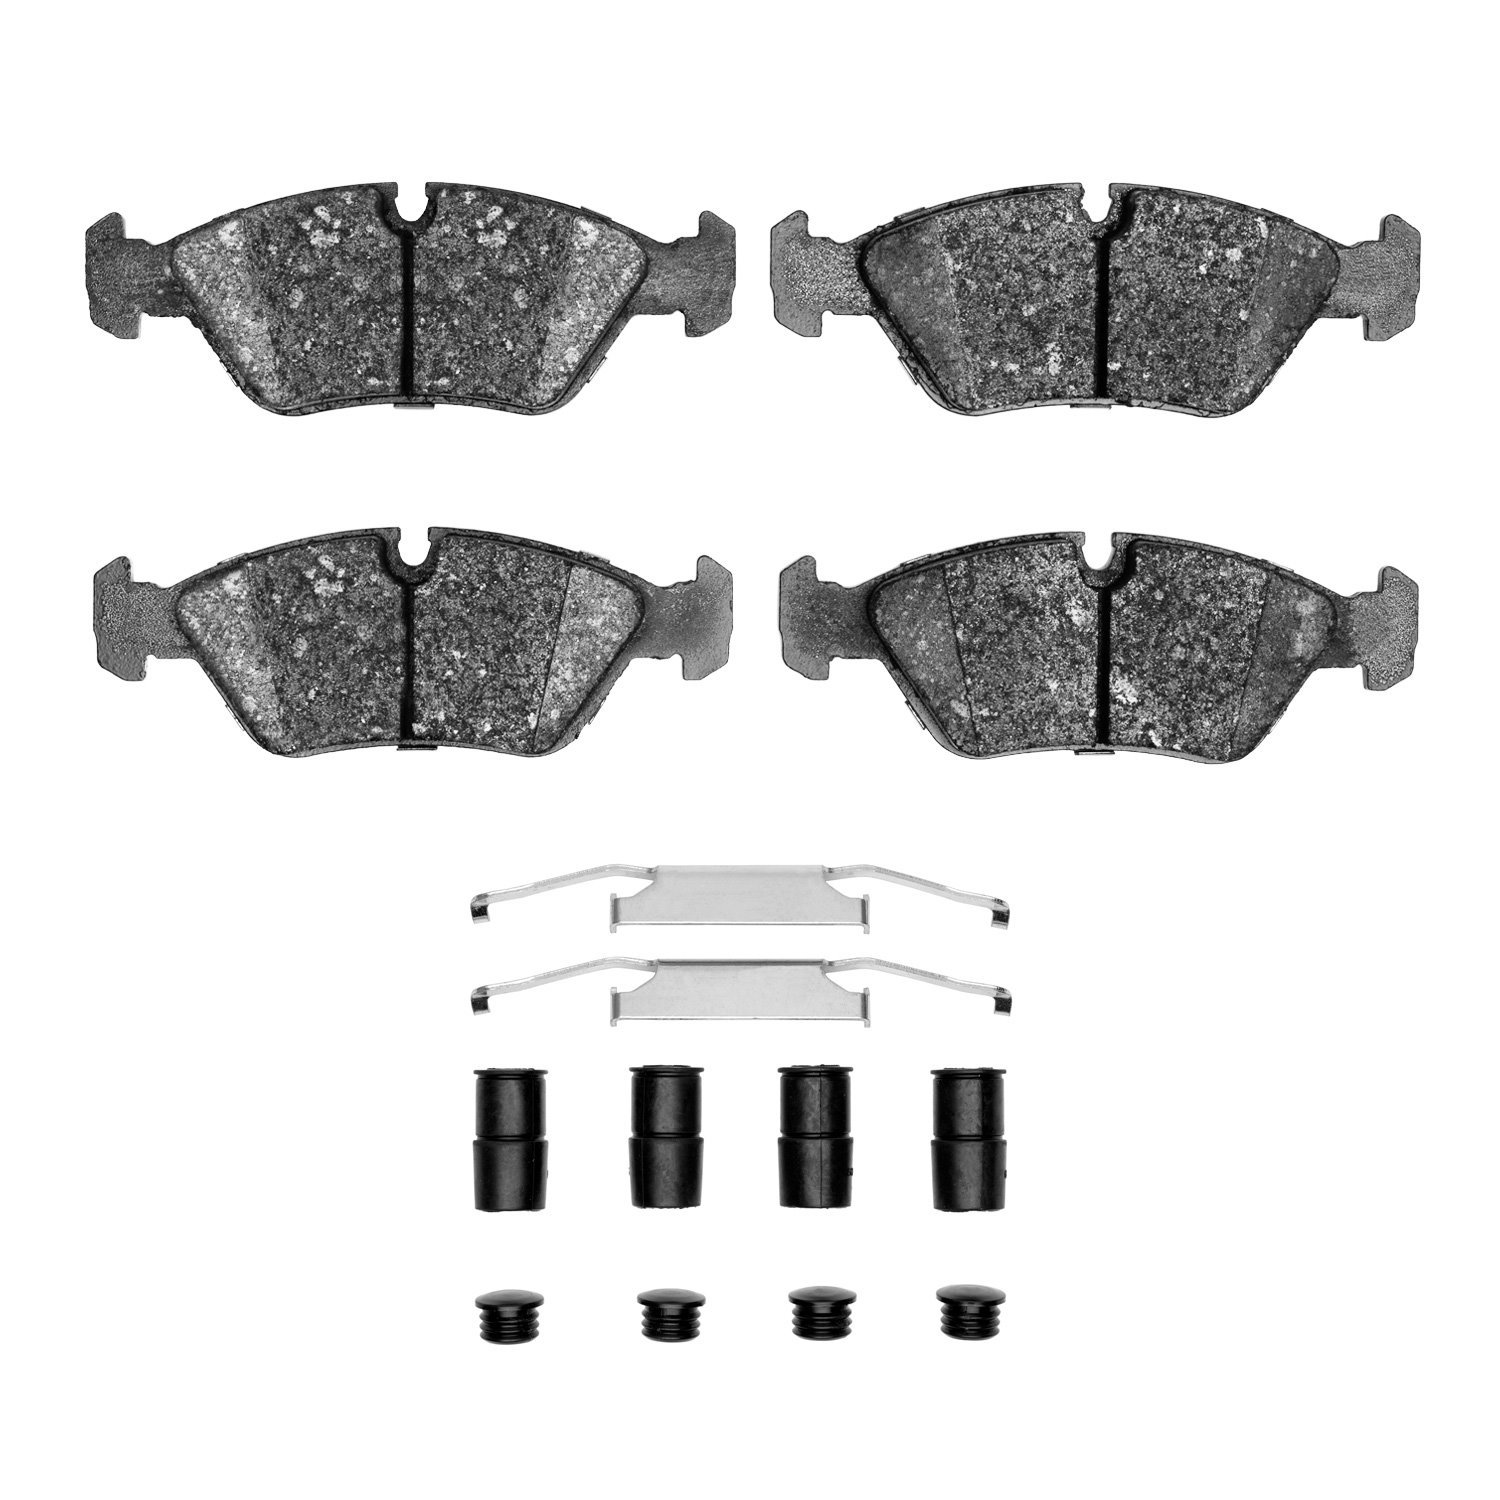 Ceramic Brake Pads & Hardware Kit, 1982-1991 Fits Multiple Makes/Models, Position: Front